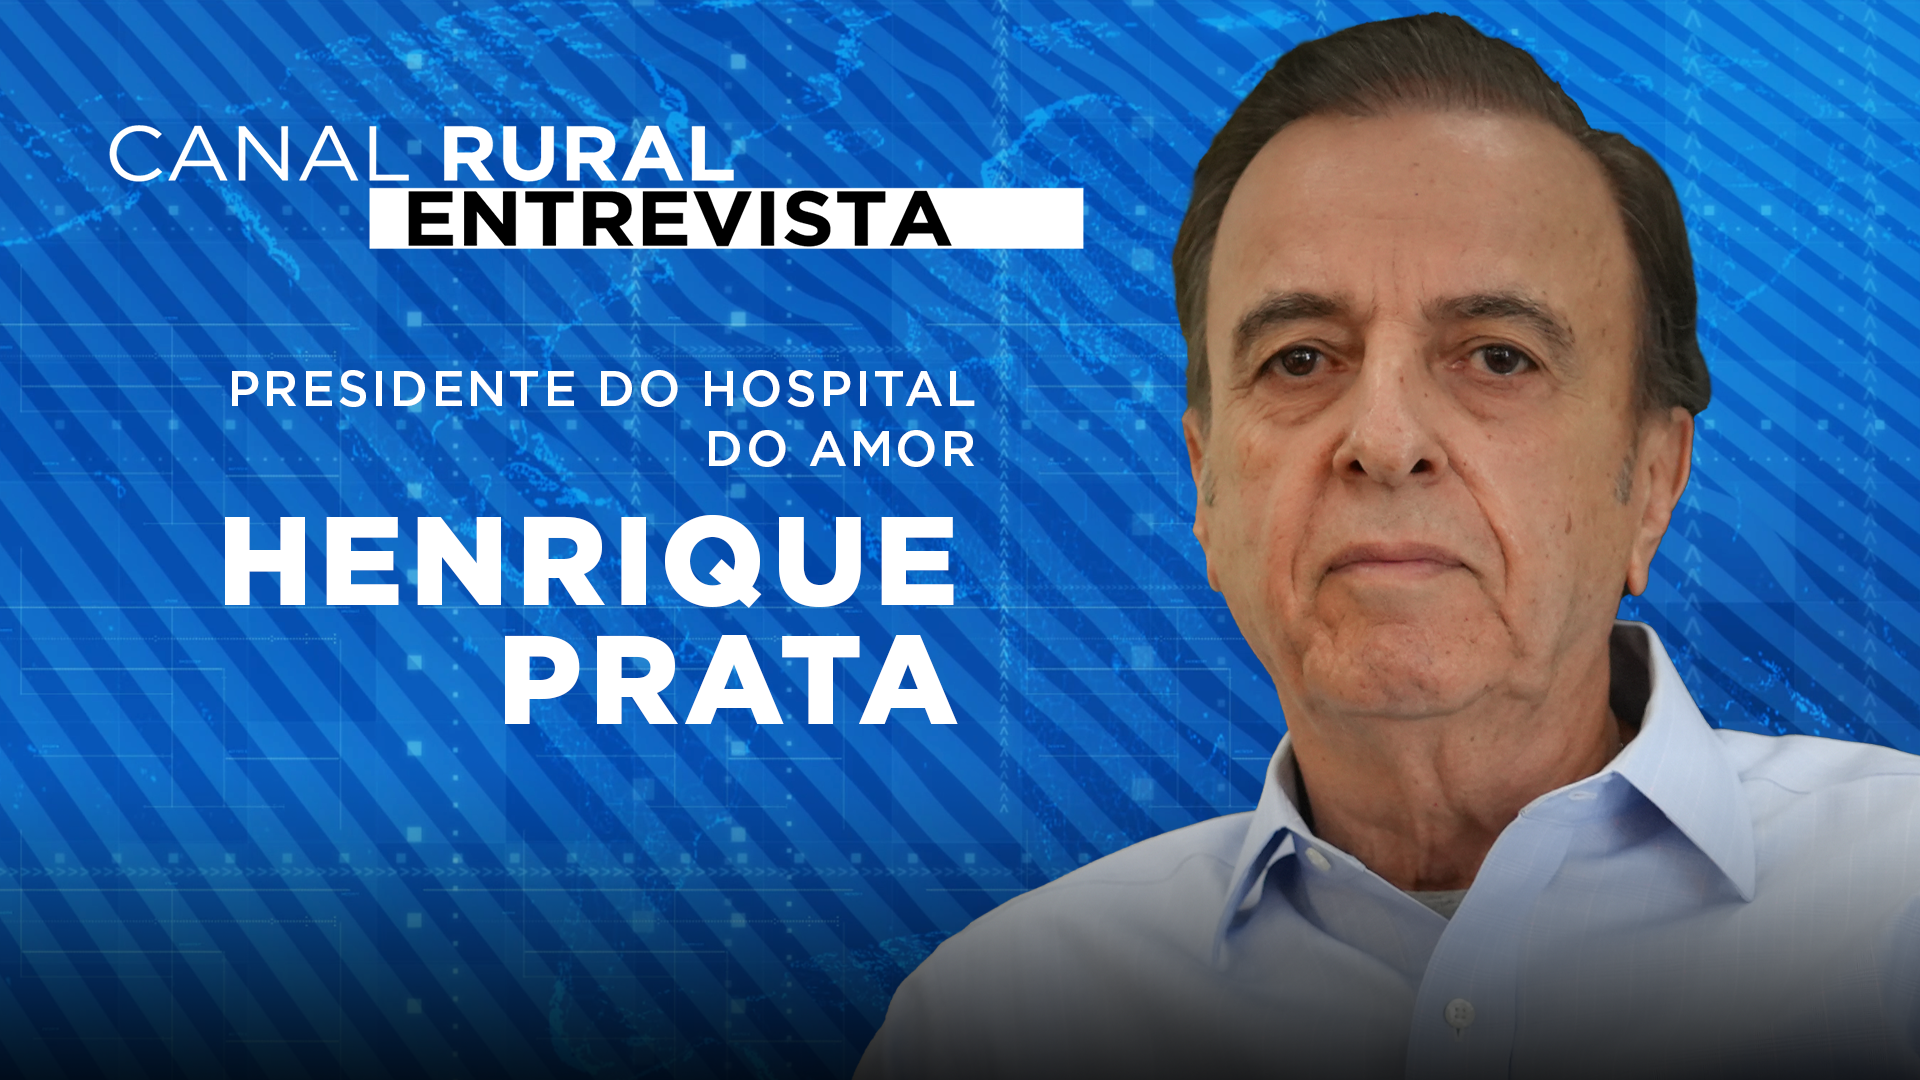 Henrique Prata: 'é um hospital que nasceu no interior para atender o povo rural'